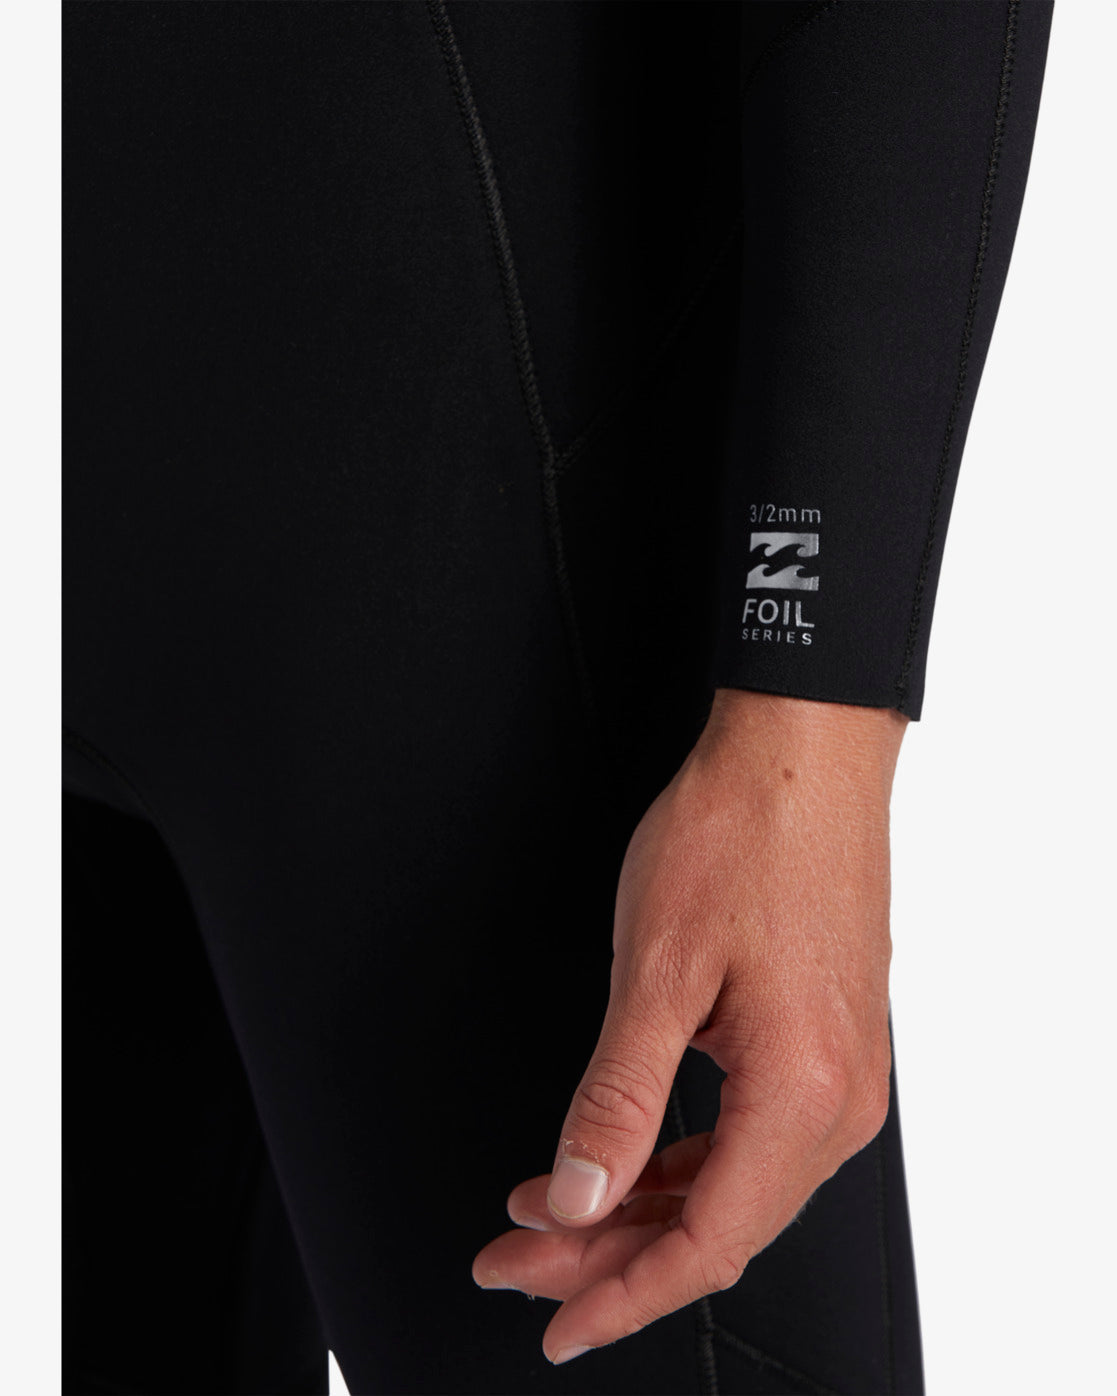 Billabong Mens 3/2 Foil Chest Zip Steamer Wetsuit